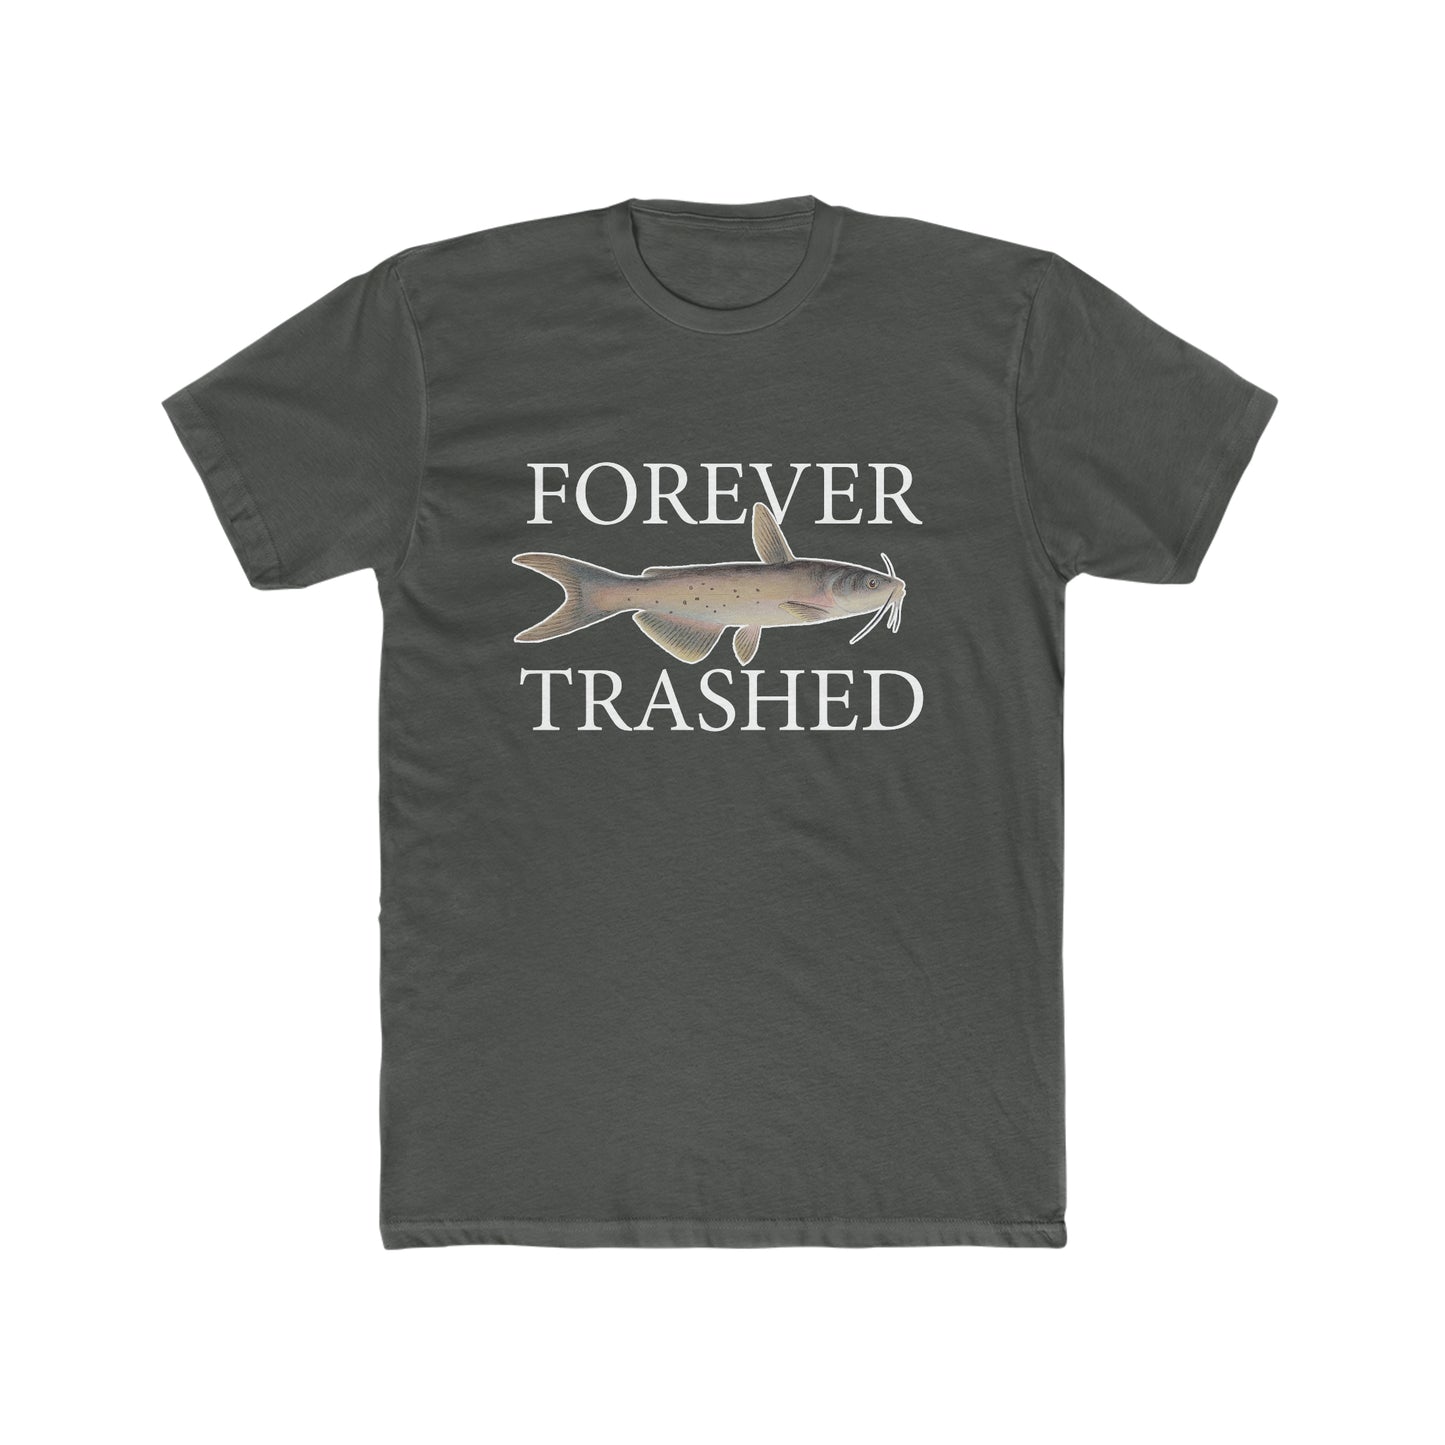 Forever Trashed